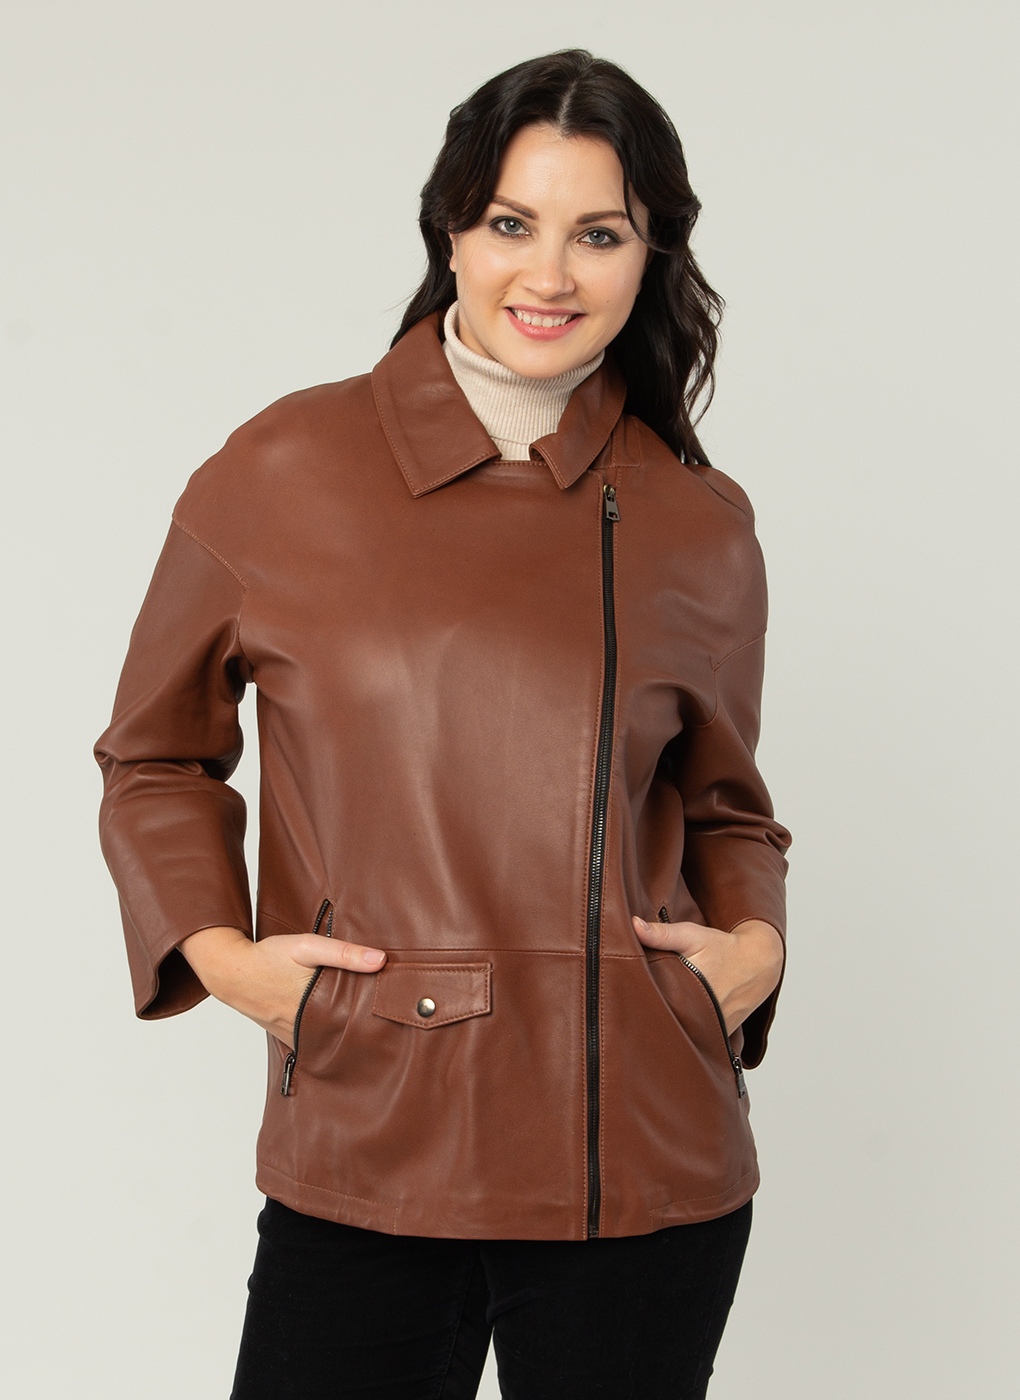 Кожаная куртка женская Каляев 52511 коричневая 60 RU